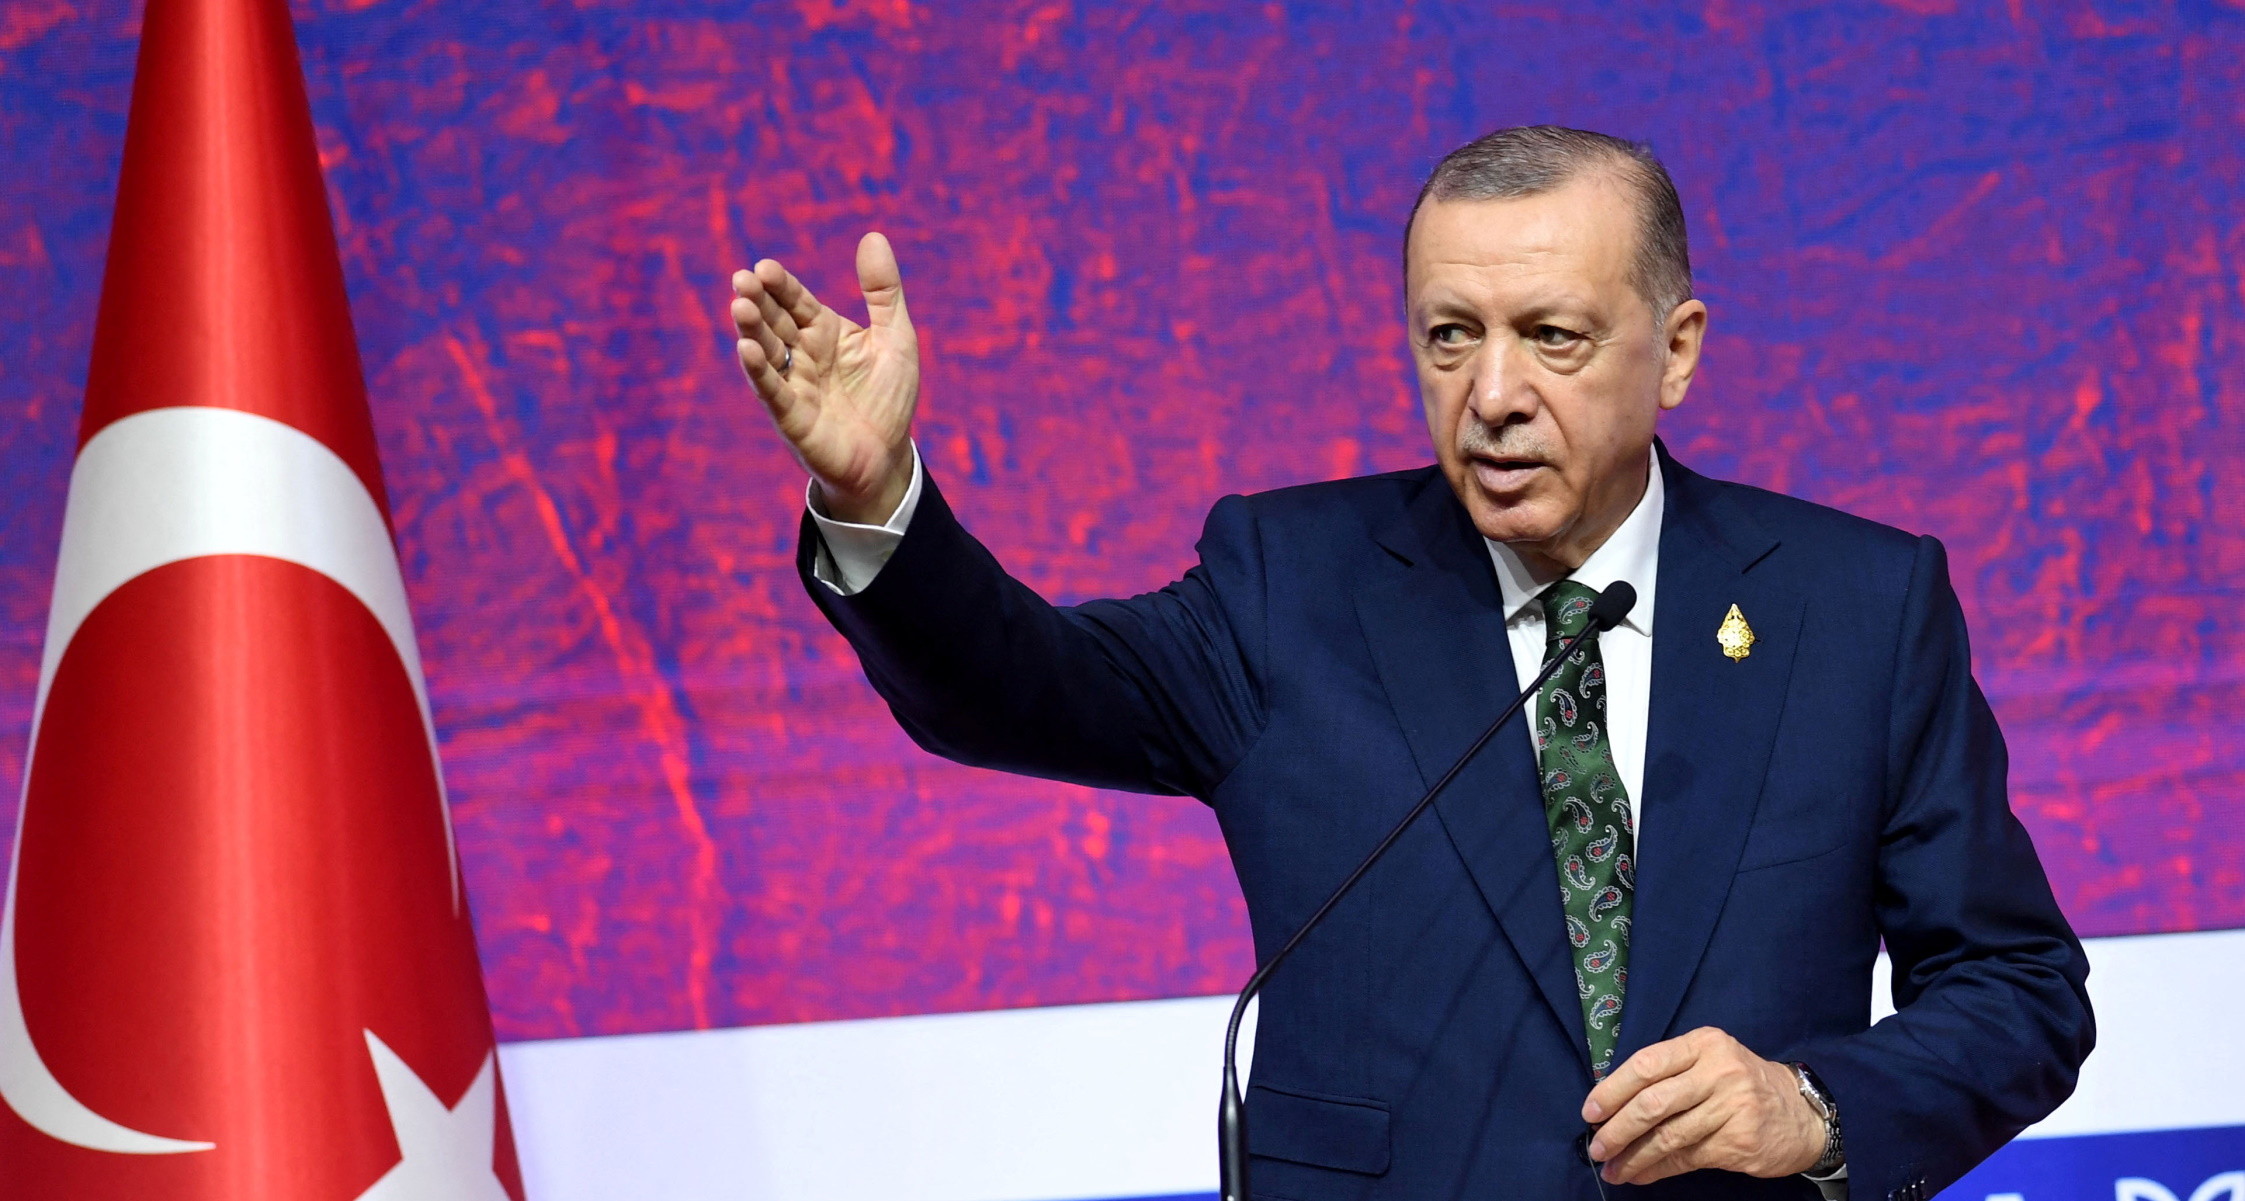 Τουρκία: Ο Ρετζέπ Ταγίπ Ερντογάν «διέταξε» δημόσια υπουργό του να αλλάξει την υπογραφή του